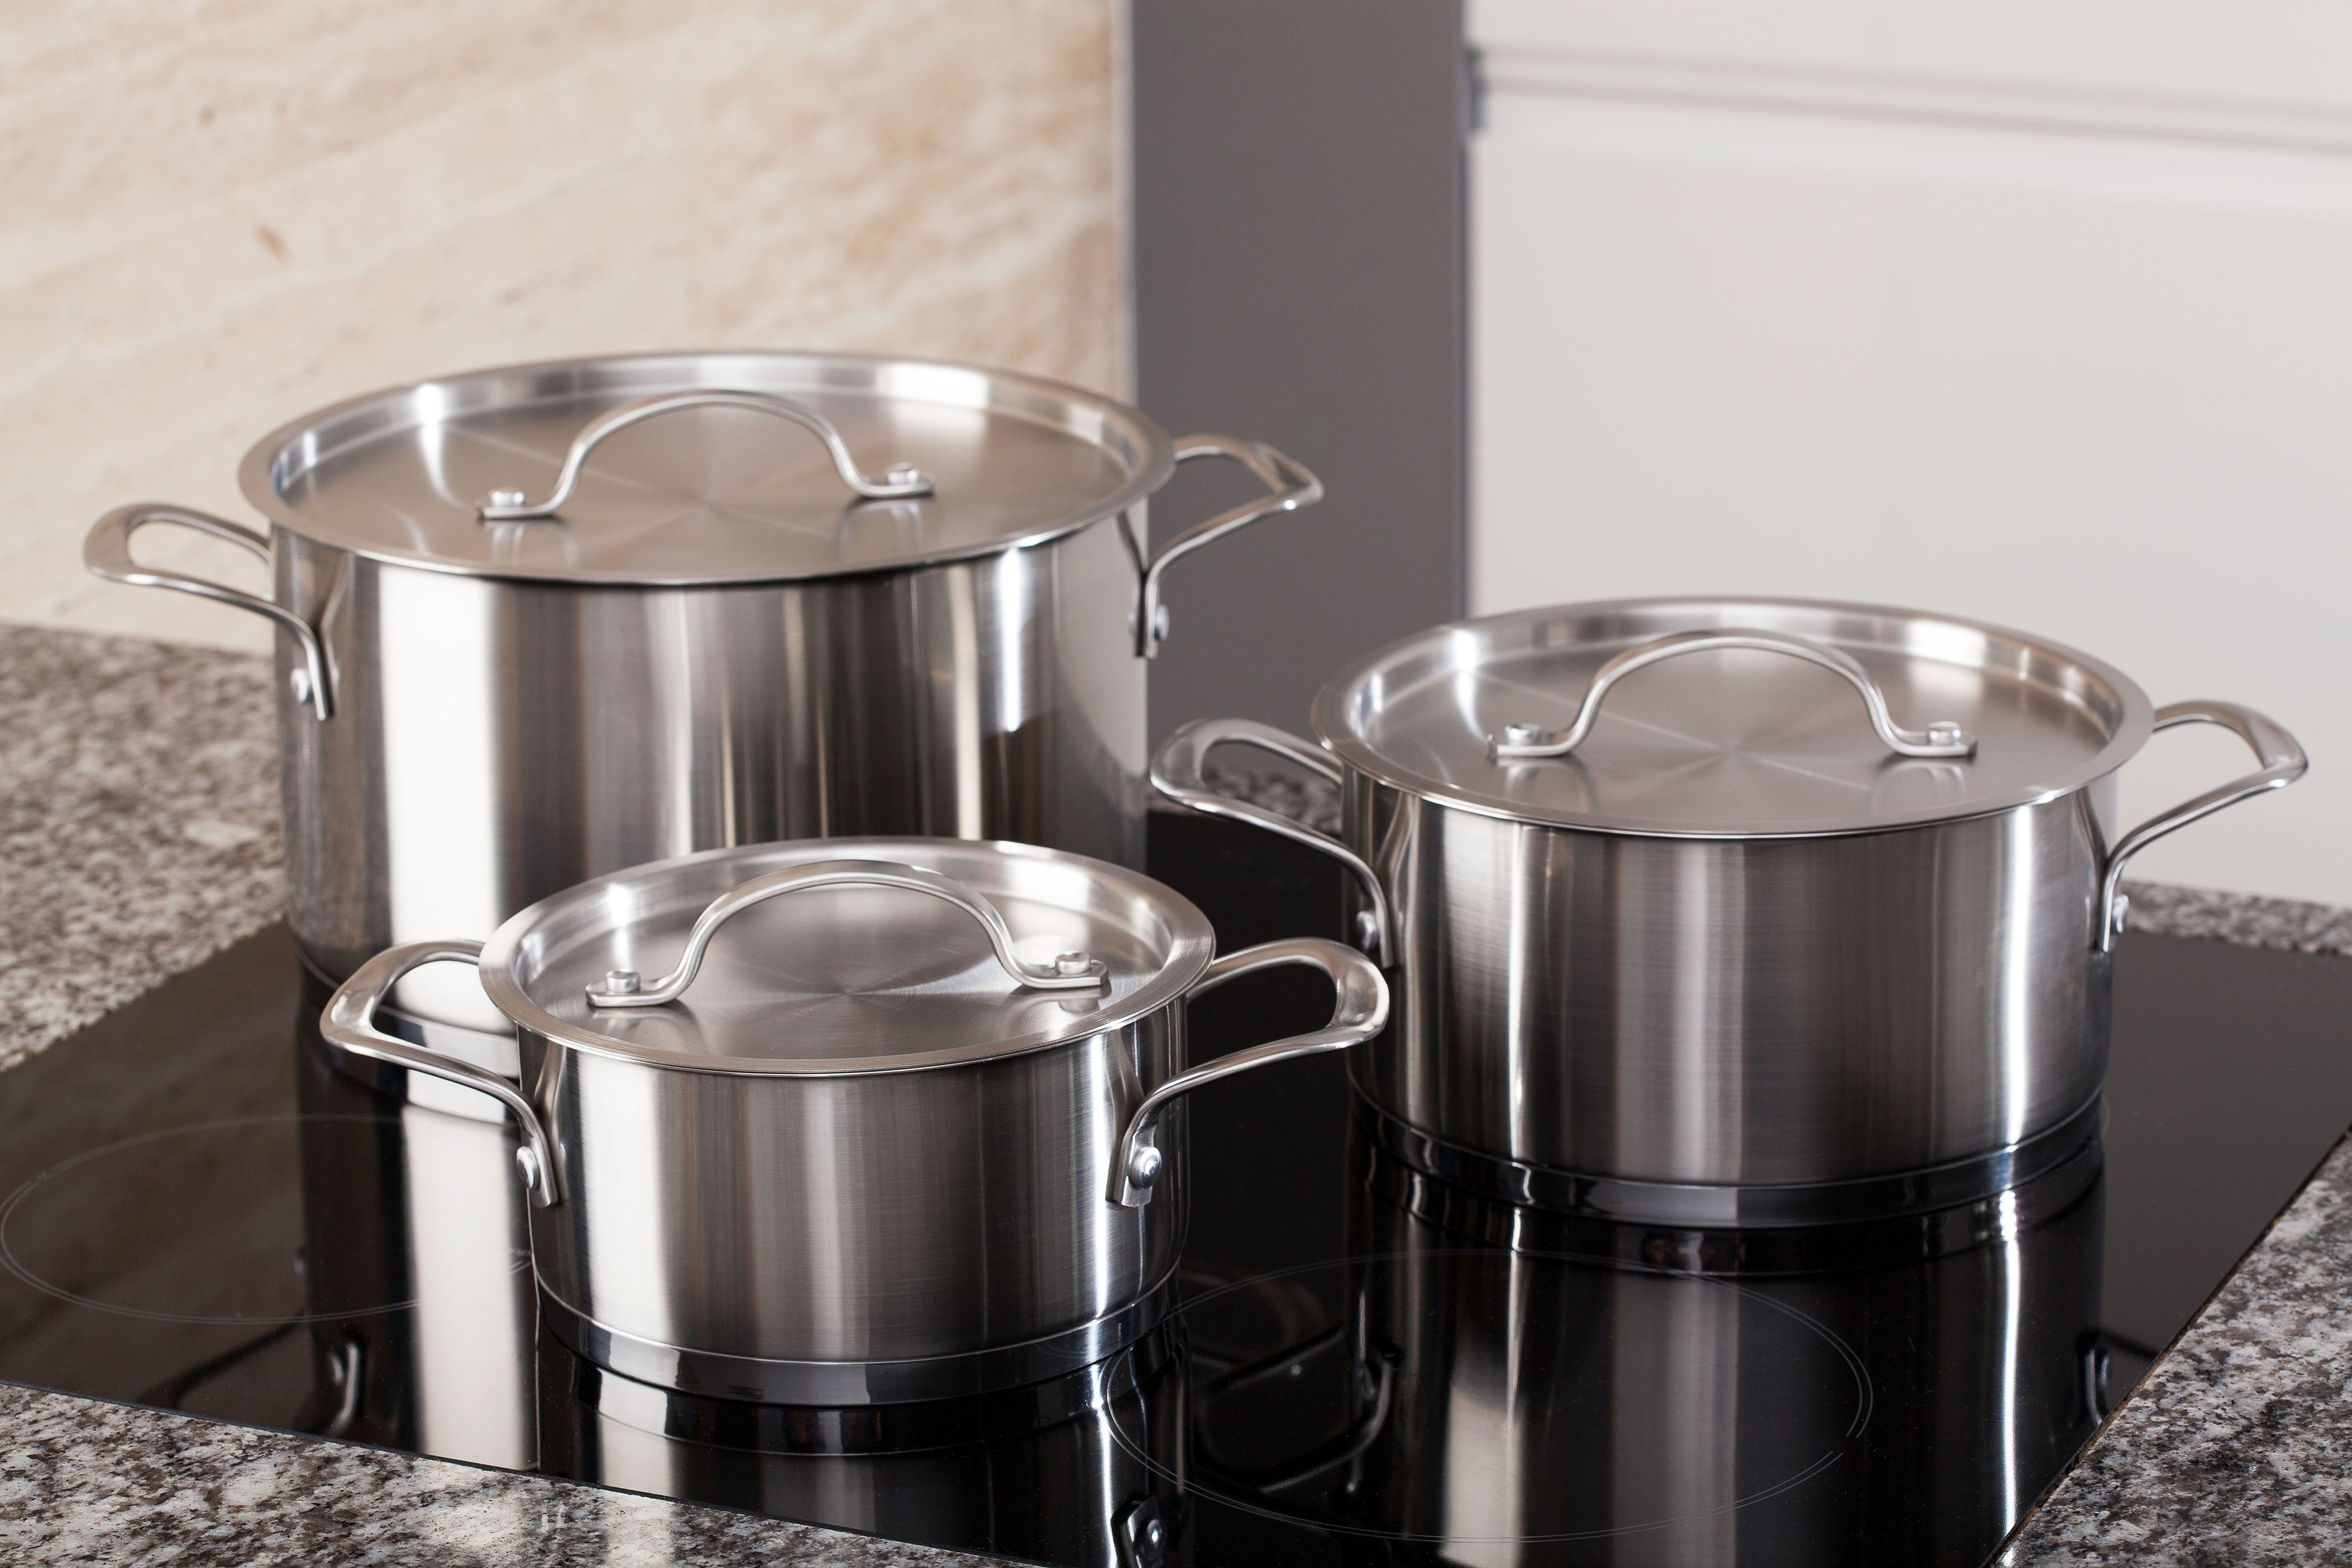 6 motivi per scegliere una pentola in acciaio per la tua cucina.